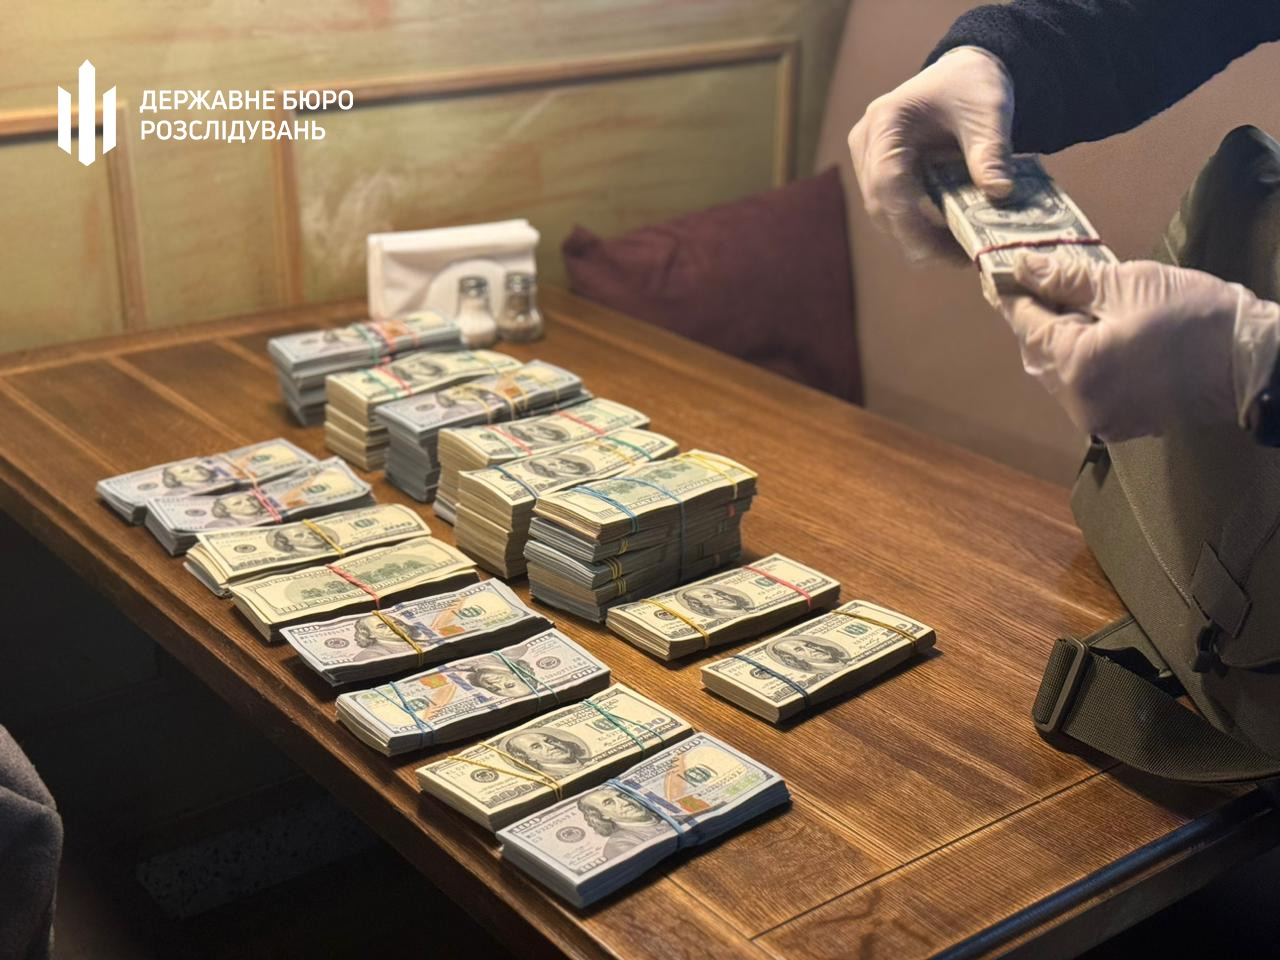 Львівський бізнесмен хотів за $500 000 підкупити  керівництво ДБР. Його арештували – відео